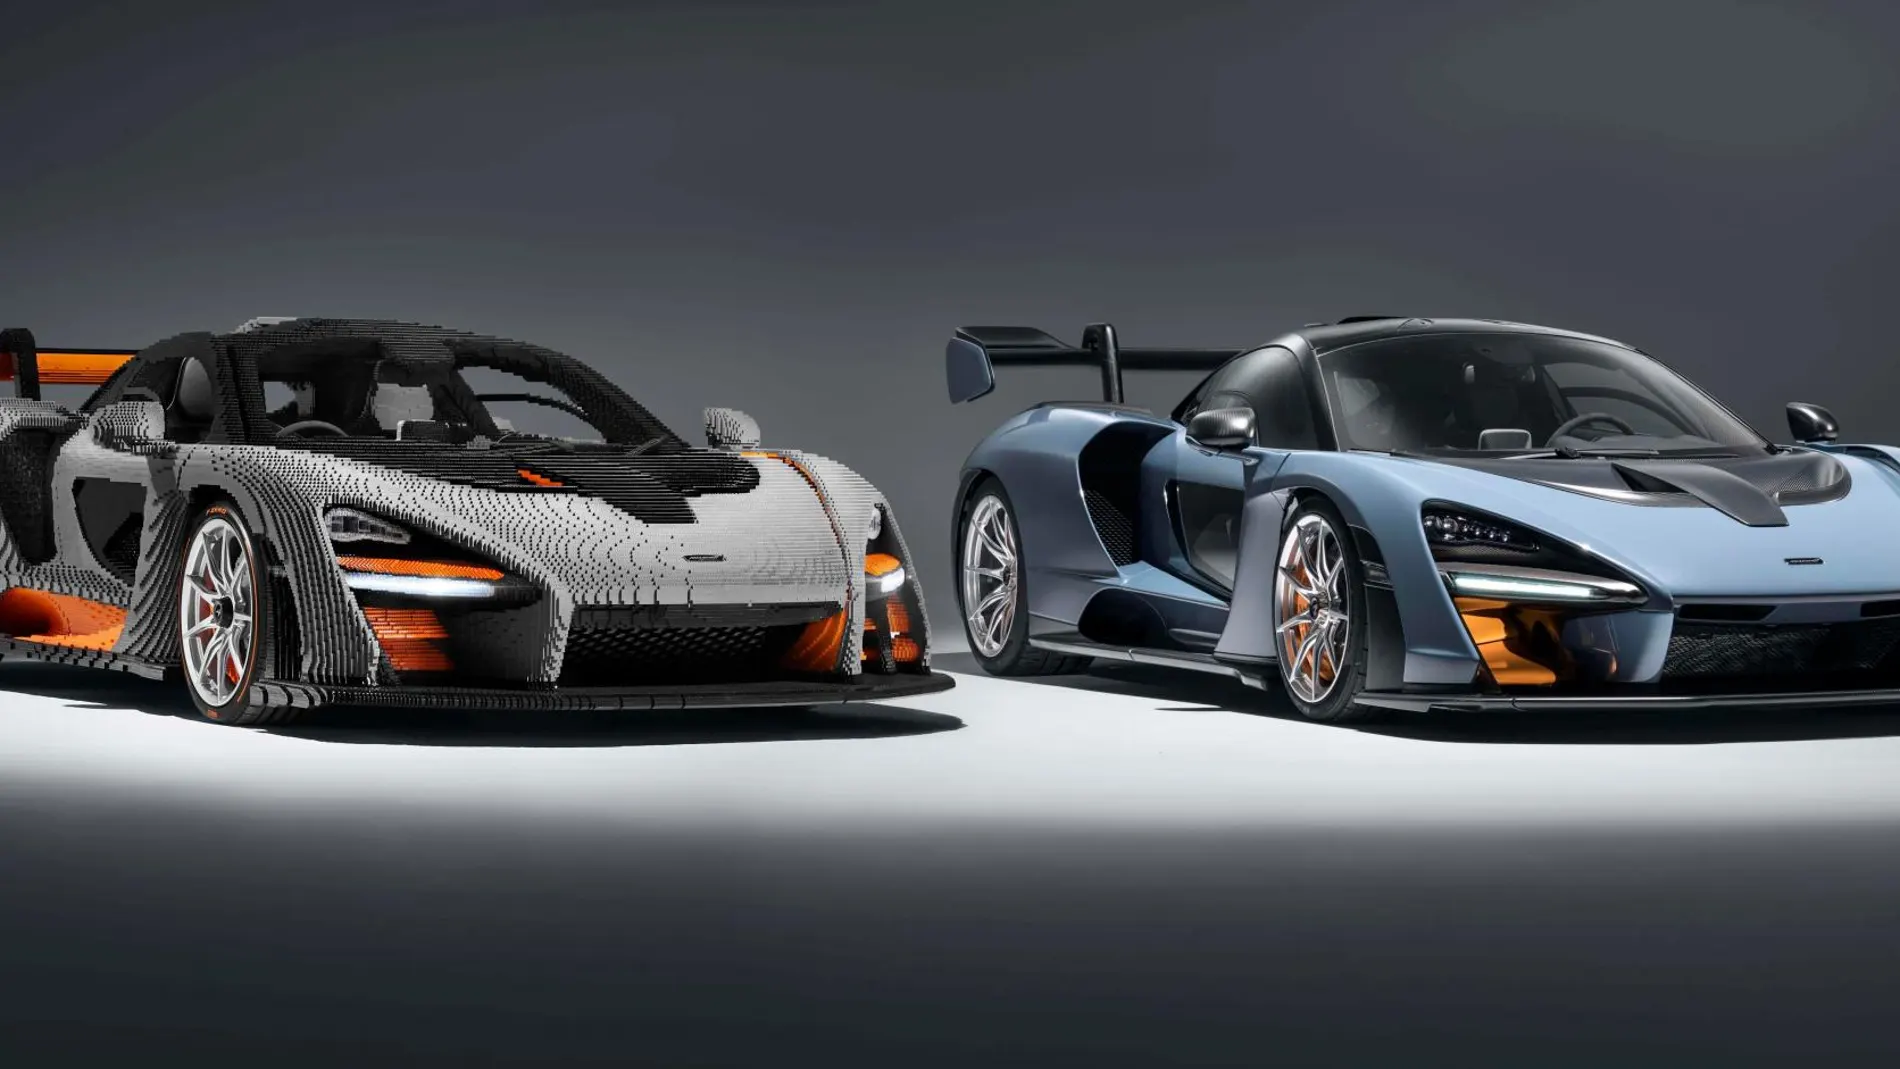 A la izquierda el coche fabricado por LEGO y a la derecha el McLaren Senna.